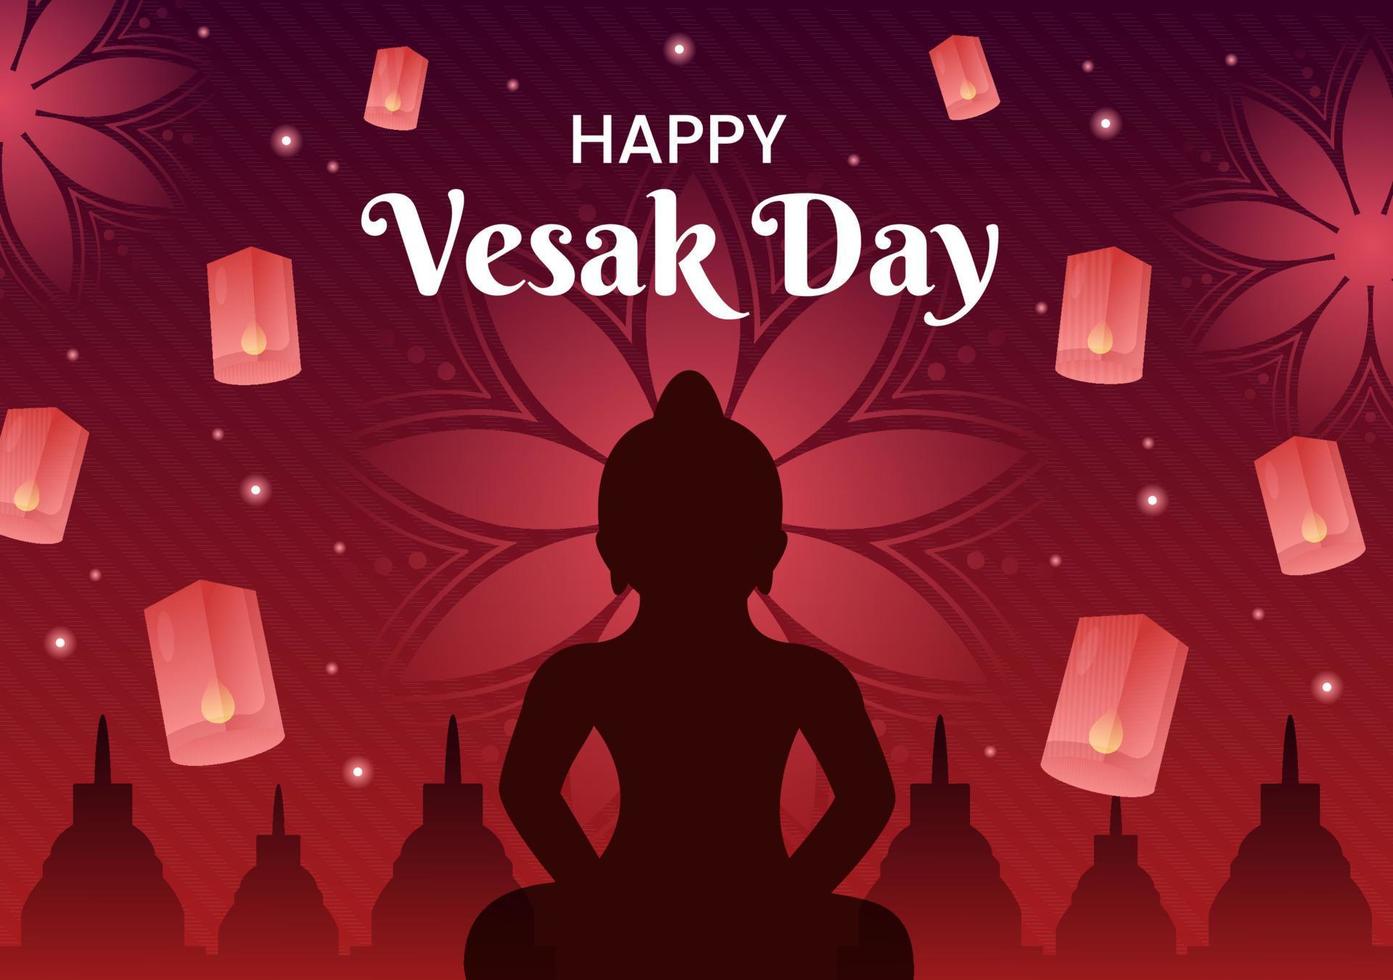 célébration de la journée vesak avec silhouette de temple, décoration de fleur de lotus, lanterne ou personne de bouddha en illustration de fond de dessin animé plat pour carte de voeux vecteur